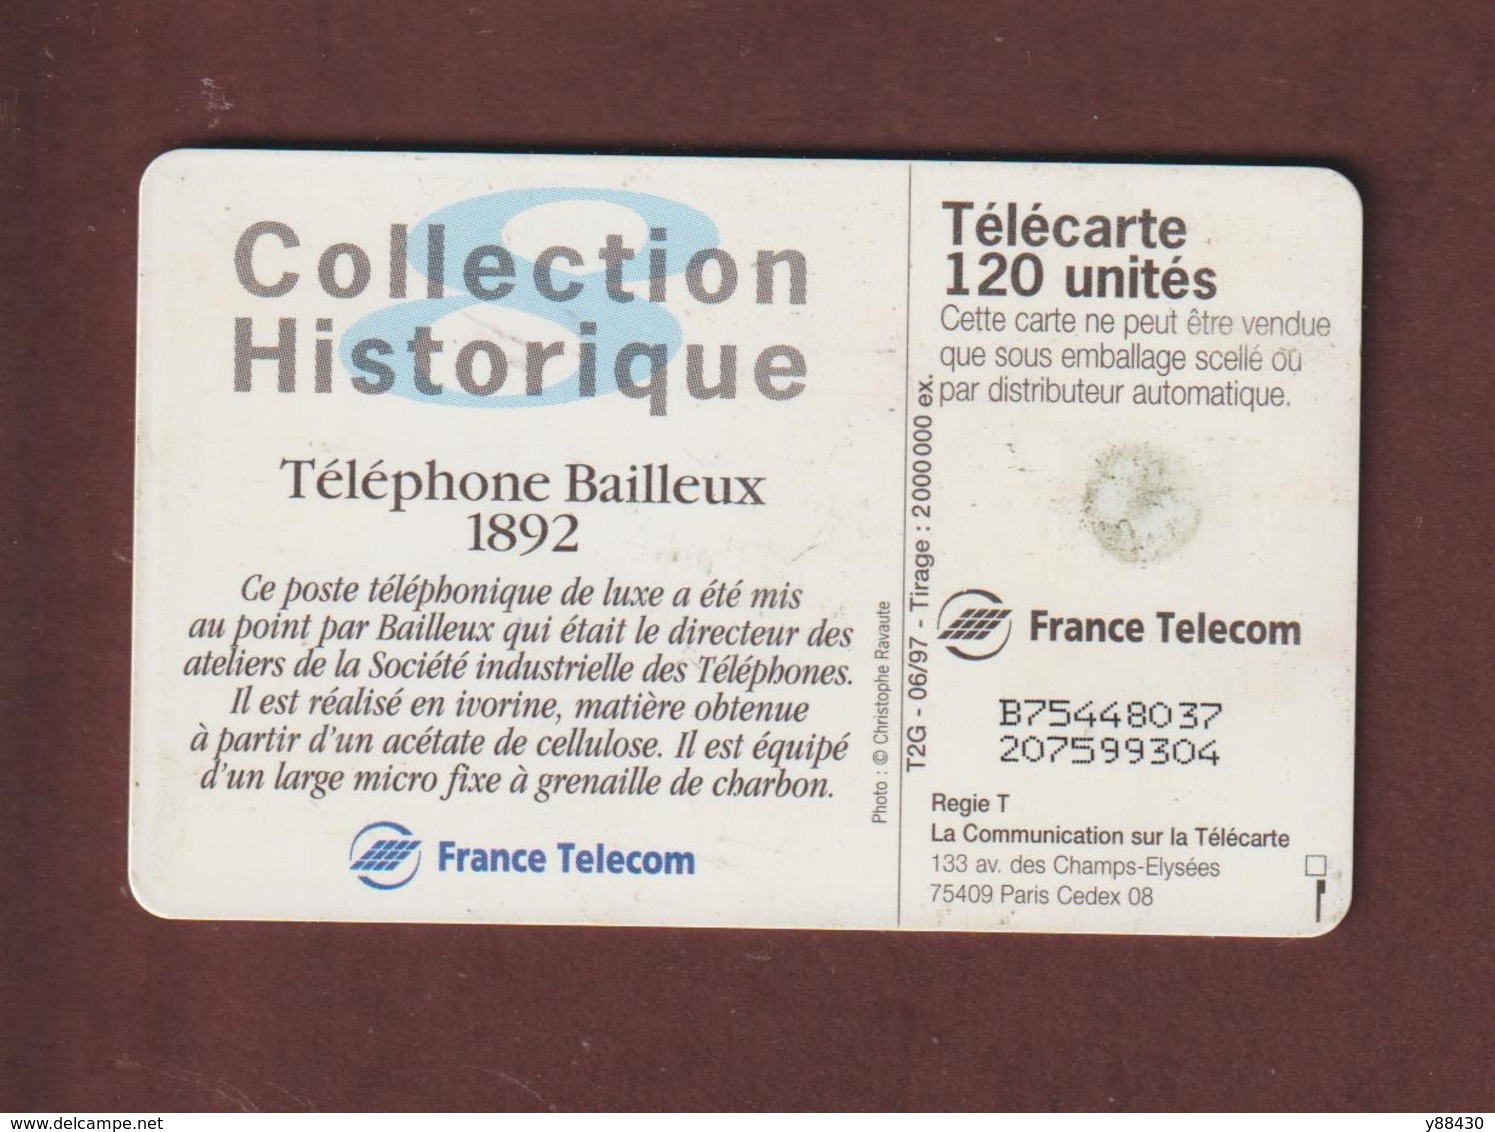 TELECARTE - Carte Téléphonique De 120 Unités - Téléphone Bailleux 1892  - 2 Scannes. - 120 Einheiten